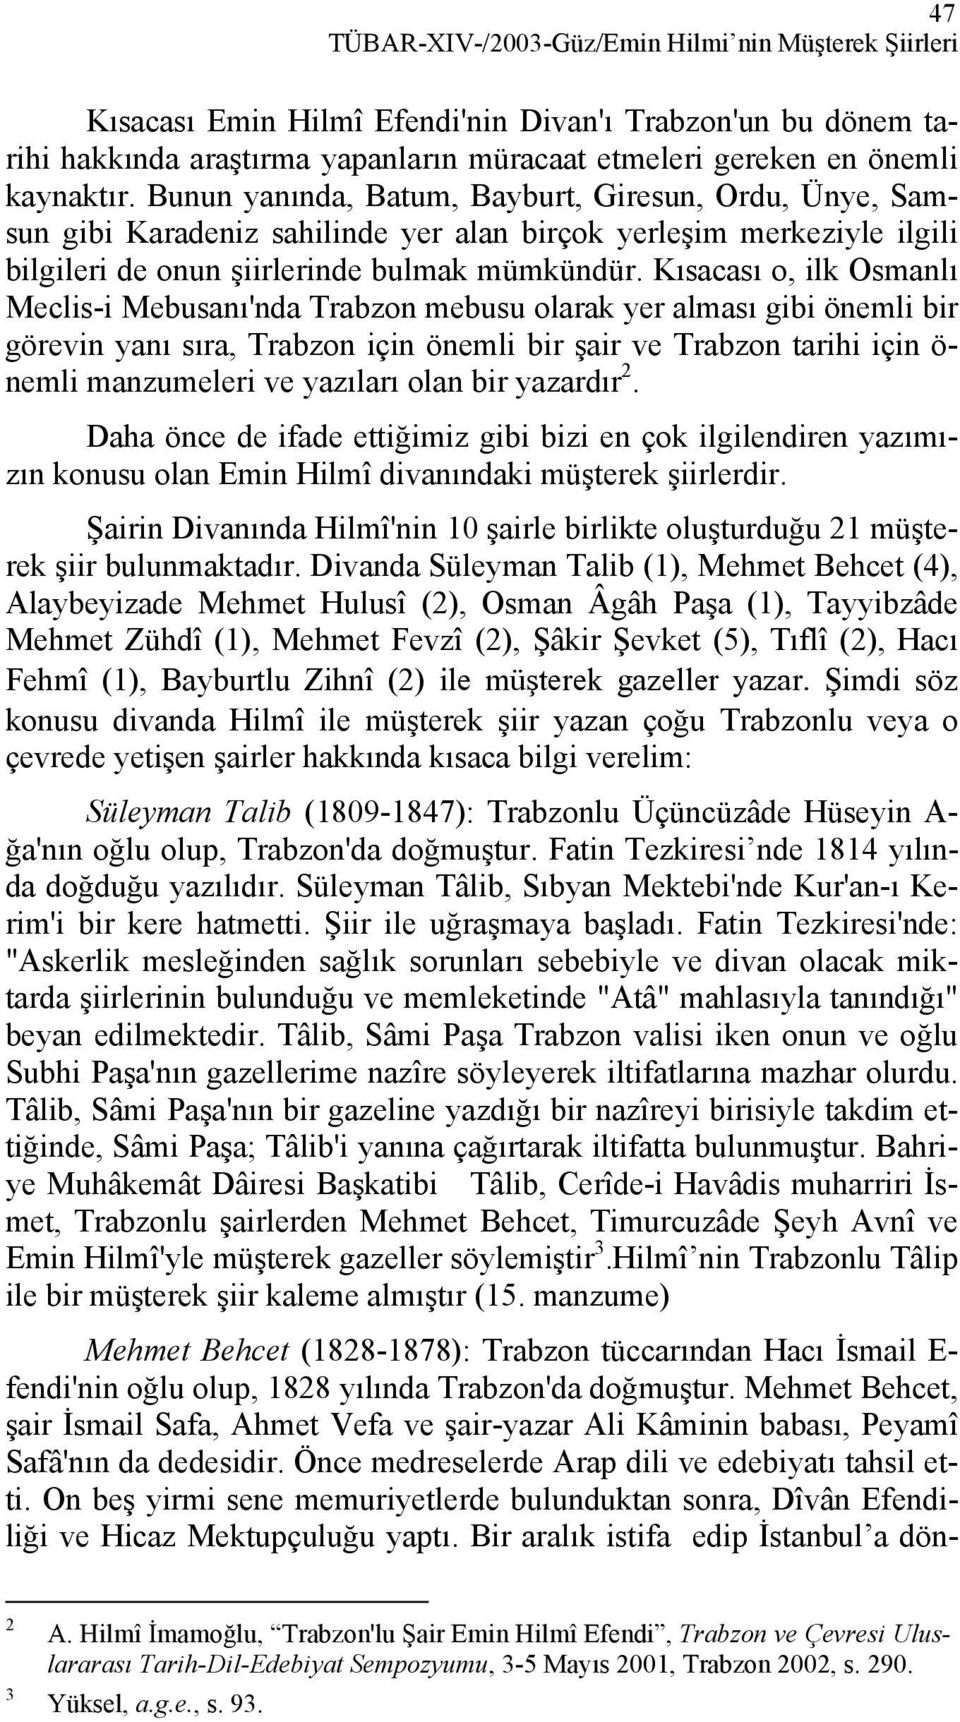 Kısacası o, ilk Osmanlı Meclis-i Mebusanı'nda Trabzon mebusu olarak yer alması gibi önemli bir görevin yanı sıra, Trabzon için önemli bir şair ve Trabzon tarihi için ö- nemli manzumeleri ve yazıları